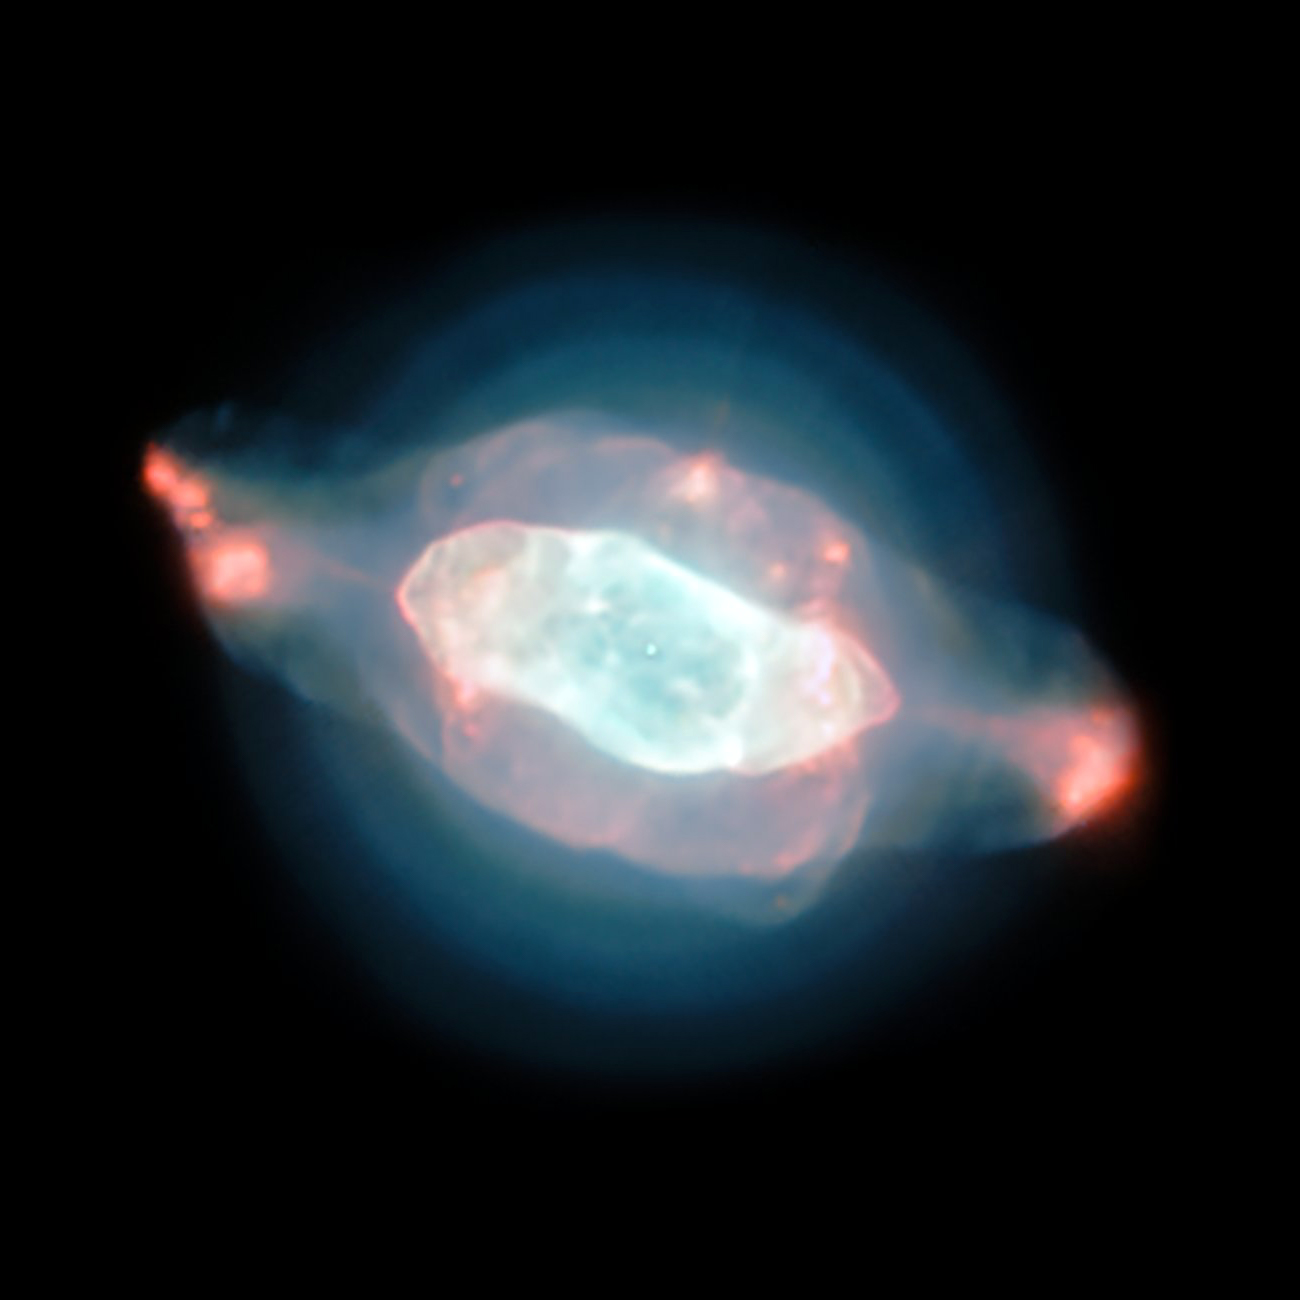 The spectacular planetary nebula NGC 7009.